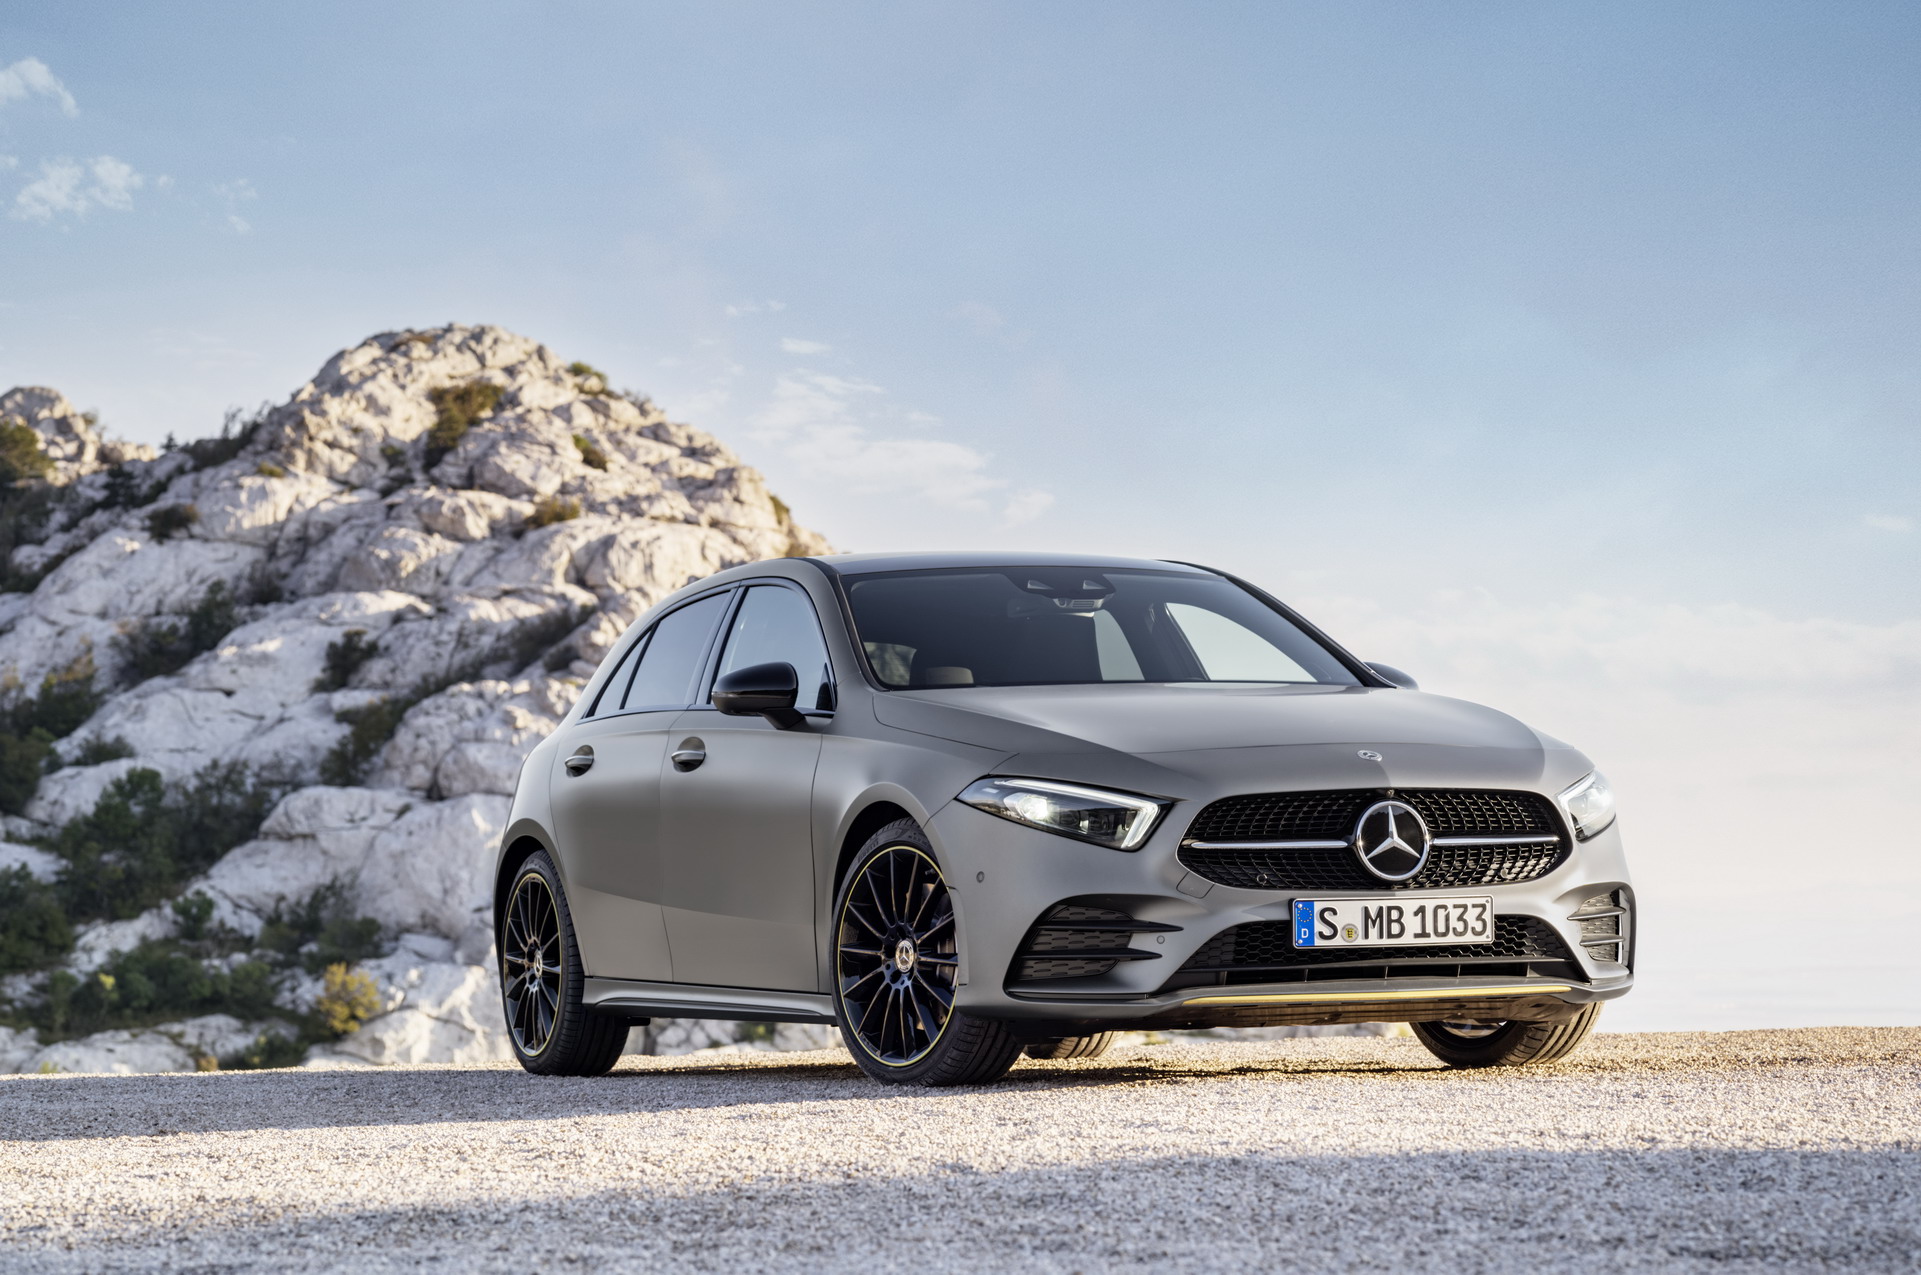 Mercedes klasy A (2018): hatchback zauważony po raz pierwszy